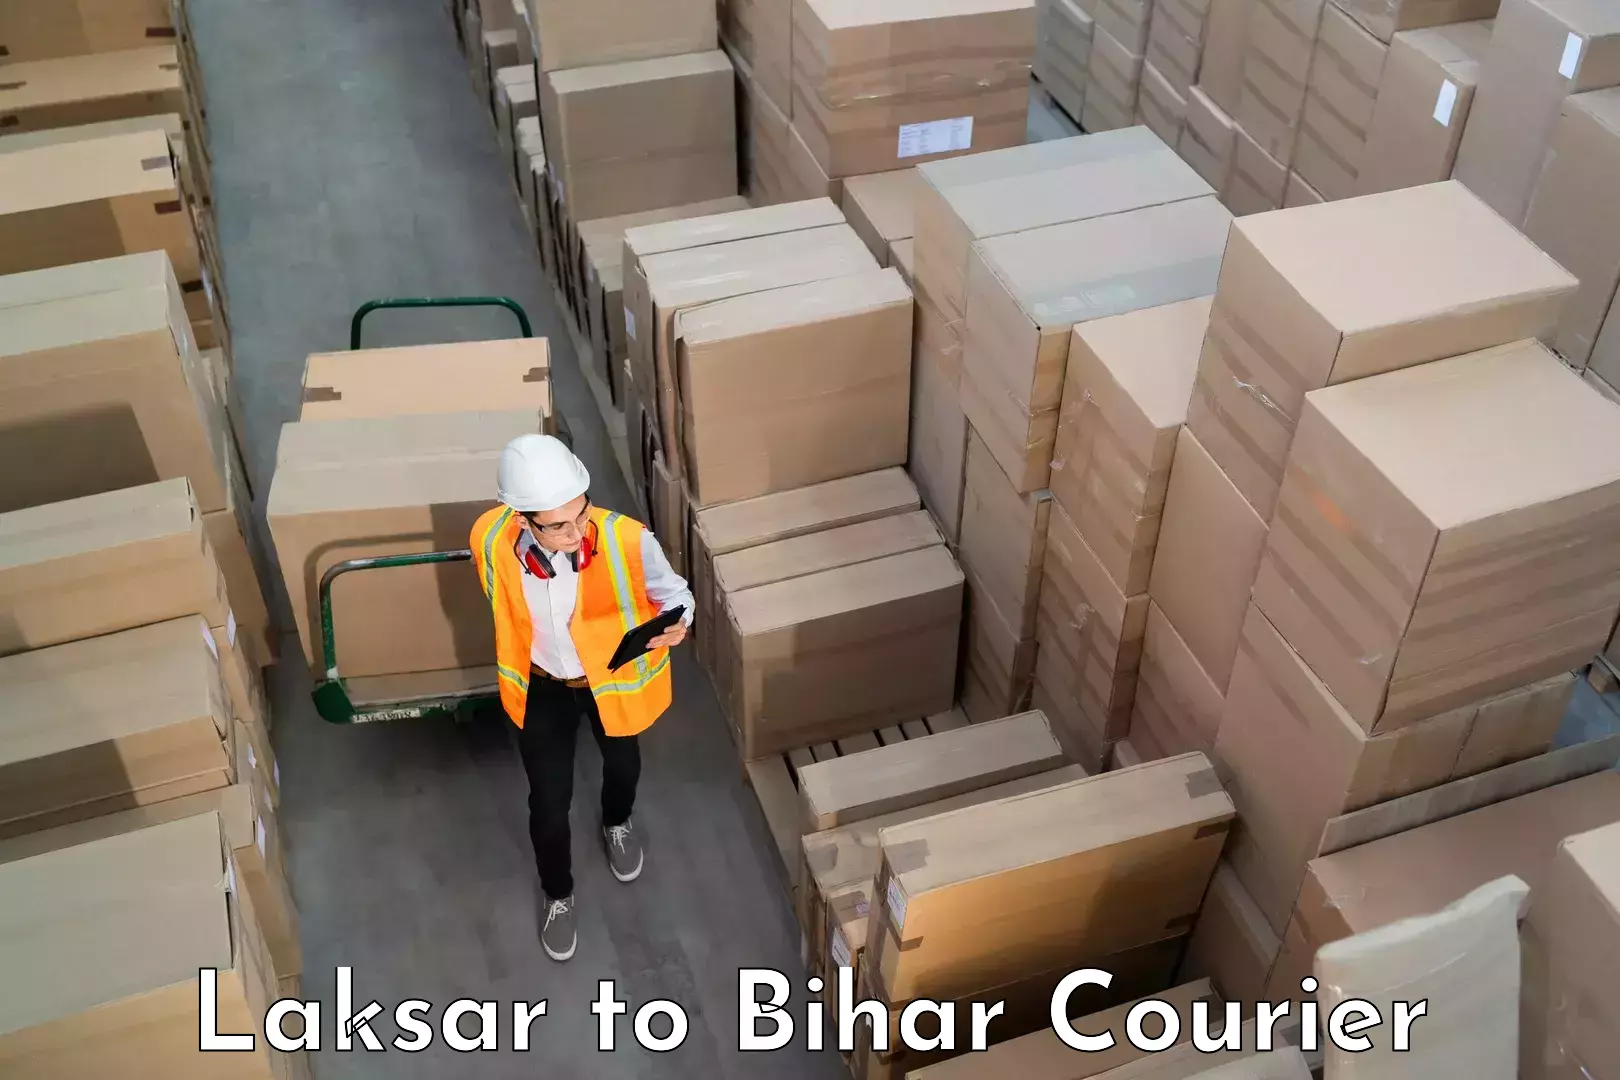 Professional baggage transport Laksar to Bhorey